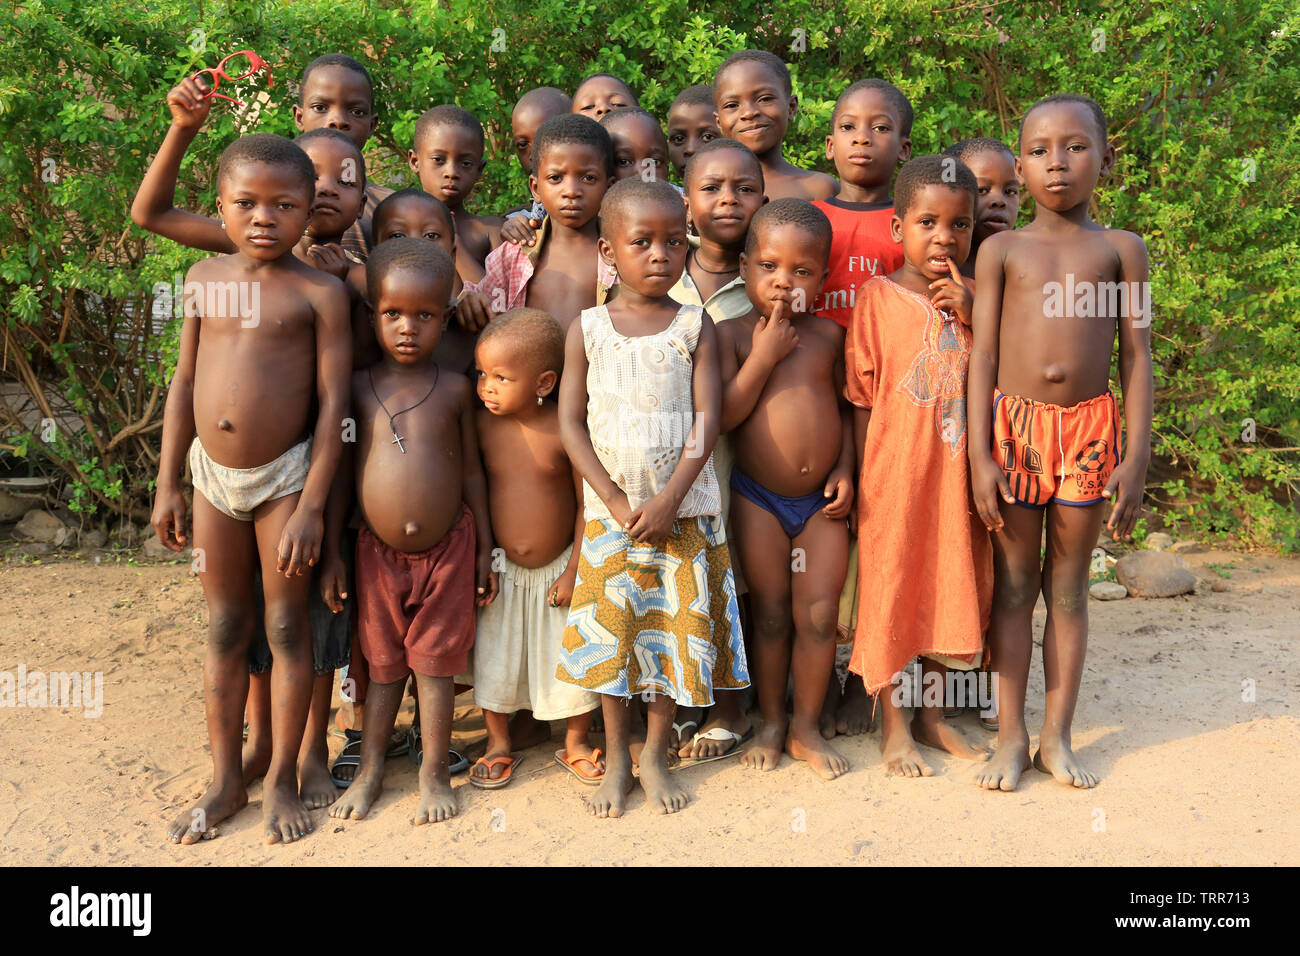 Groupe d'enfants Togolais. Datcha. Il Togo. Afrique de l'Ouest. Foto Stock